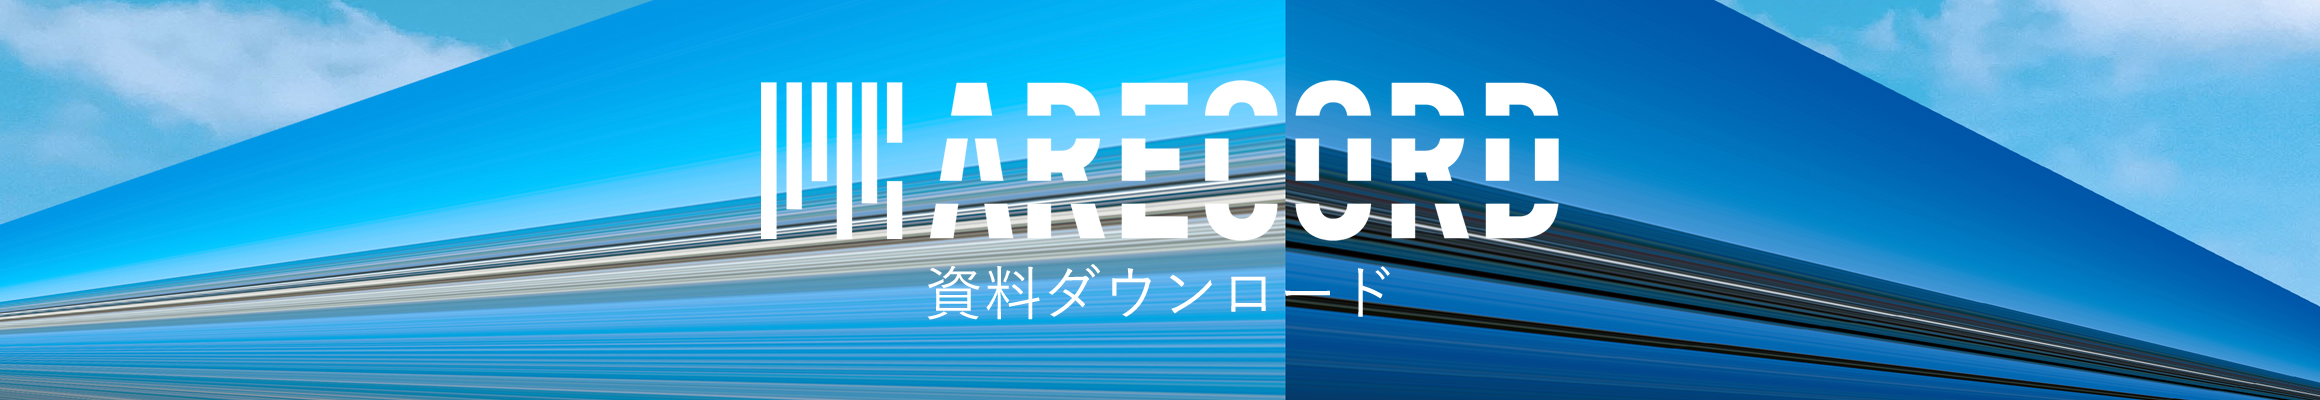 千葉県のホームページ制作 ARECORD エーレコード資料ダウンロード